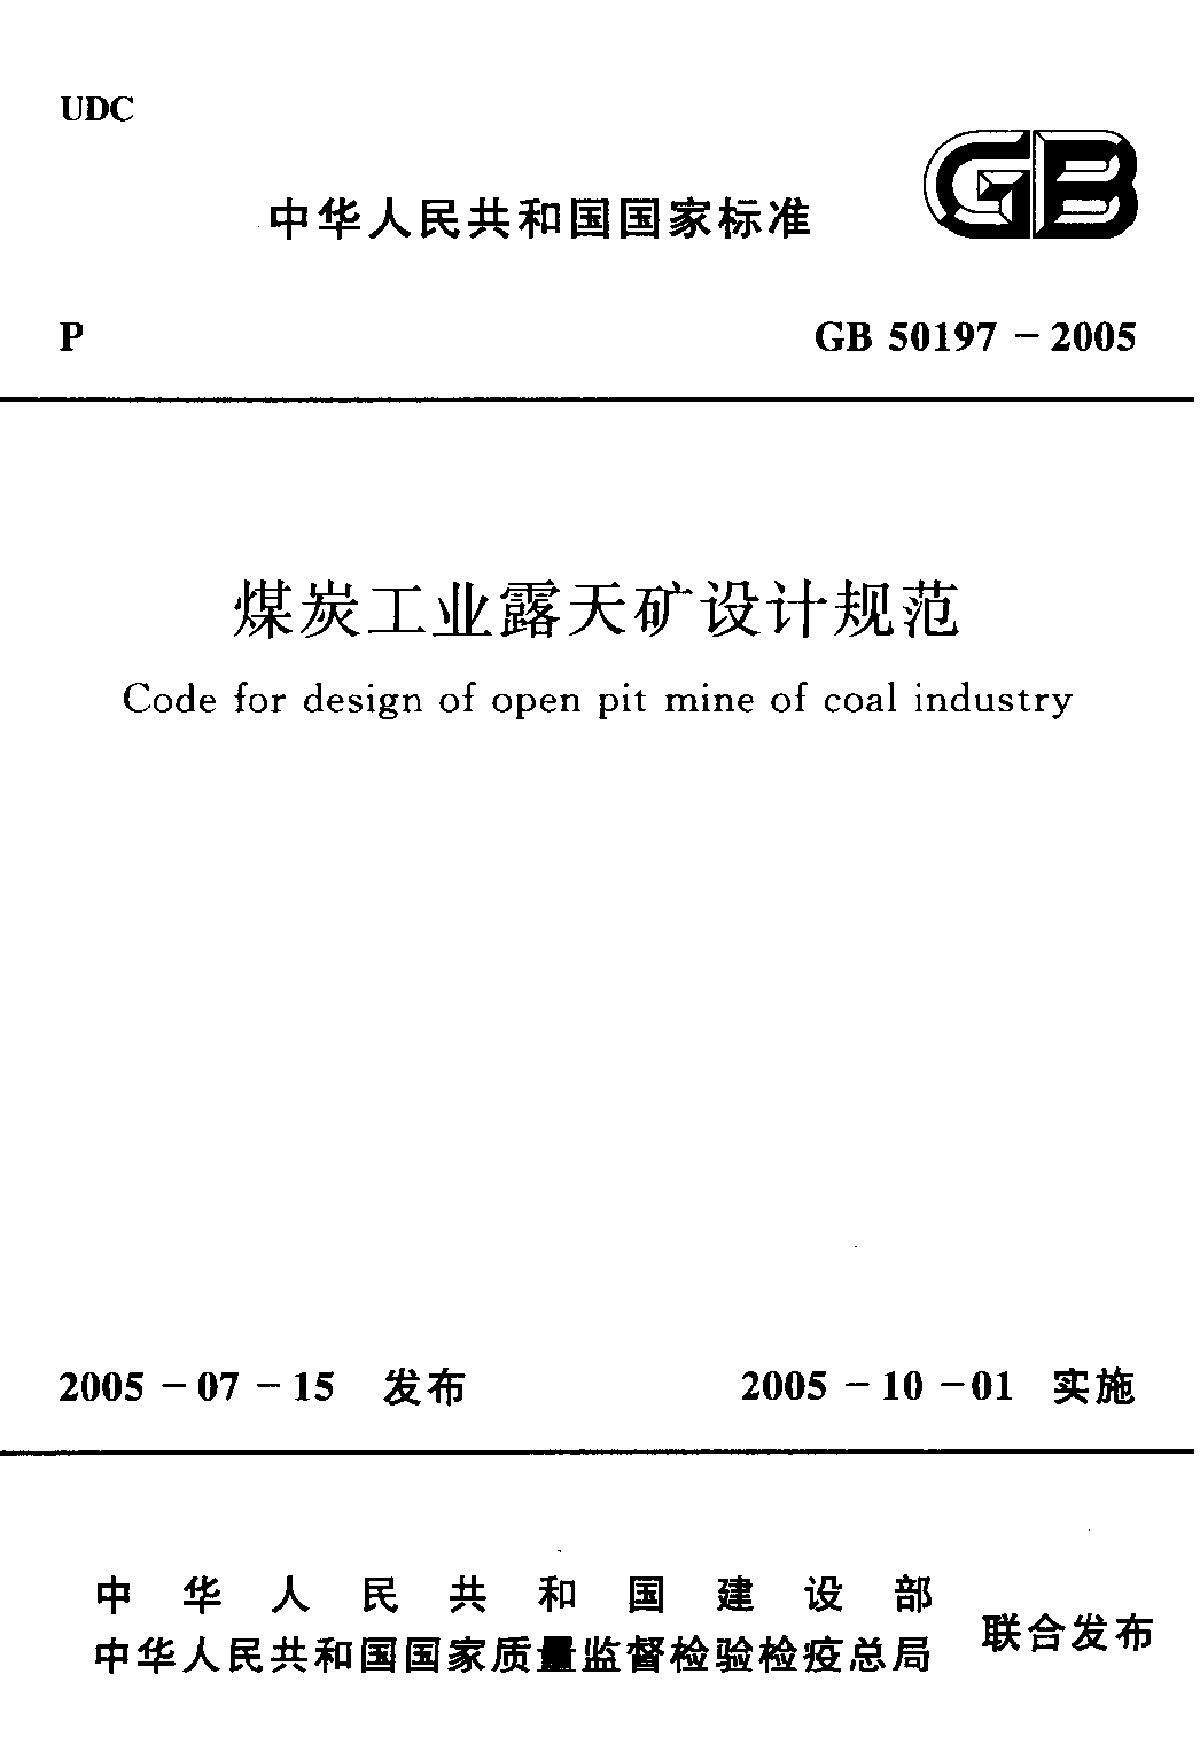 《煤炭工业露天矿设计规范》(GB 50197-2005)